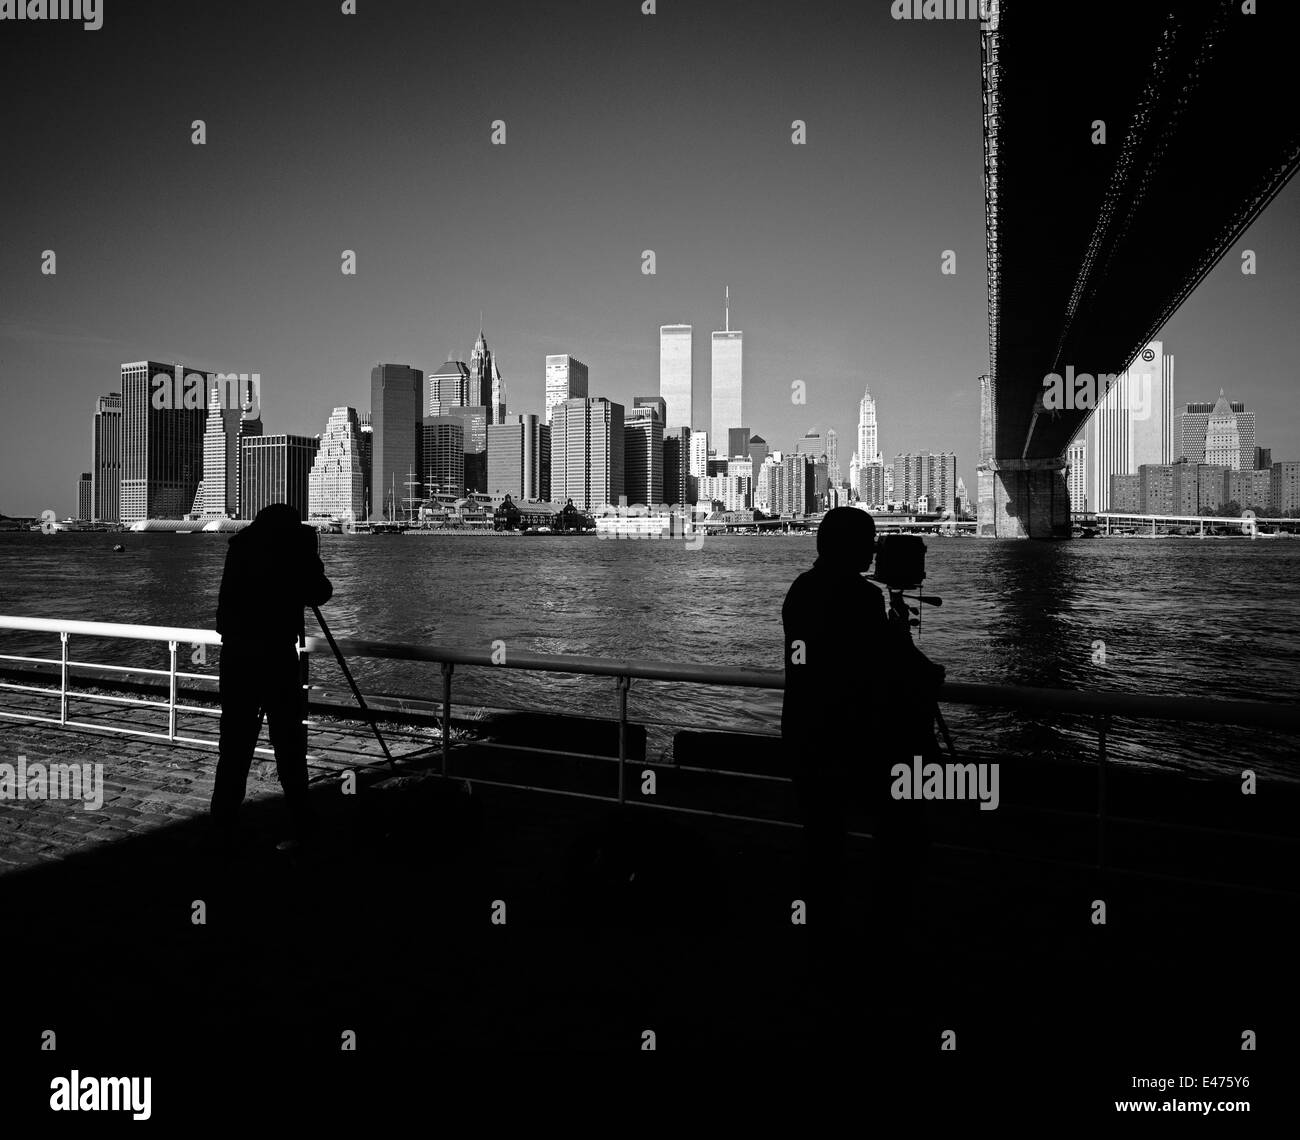 Silhouetten von Fotografen, die vor dem 11 2001. September in New York City NY USA Fotos von der Skyline von Lower Manhattan mit der Brooklyn Bridge, East River, gemacht haben Stockfoto